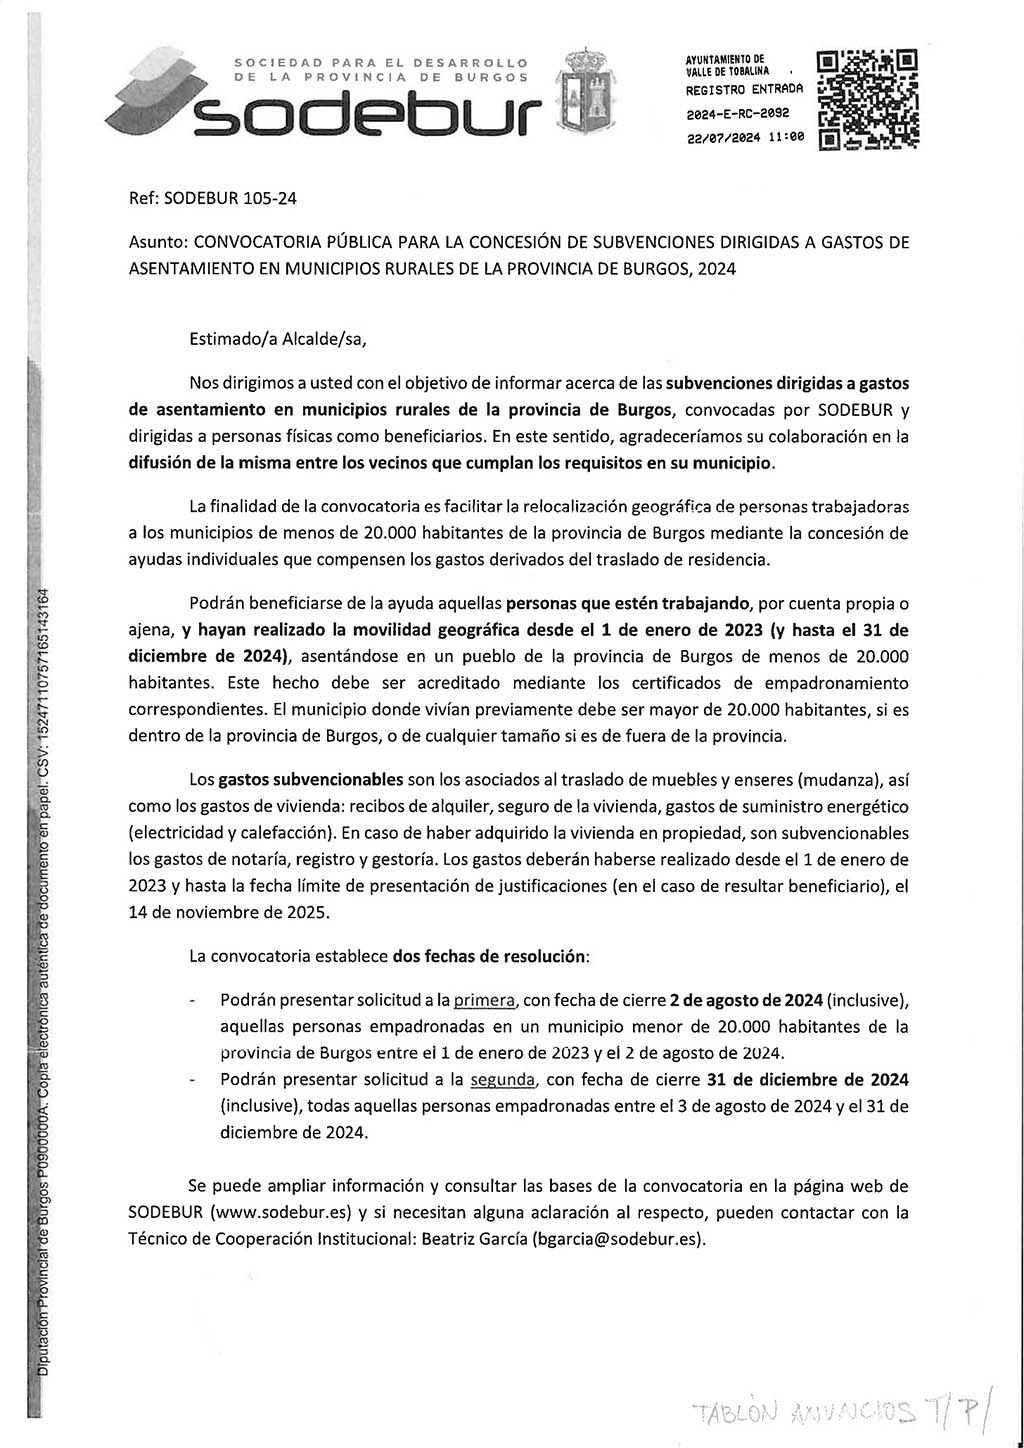 Convocatoria Pública Subvenciones Asentamiento Municipios Rurales de Burgos 2024